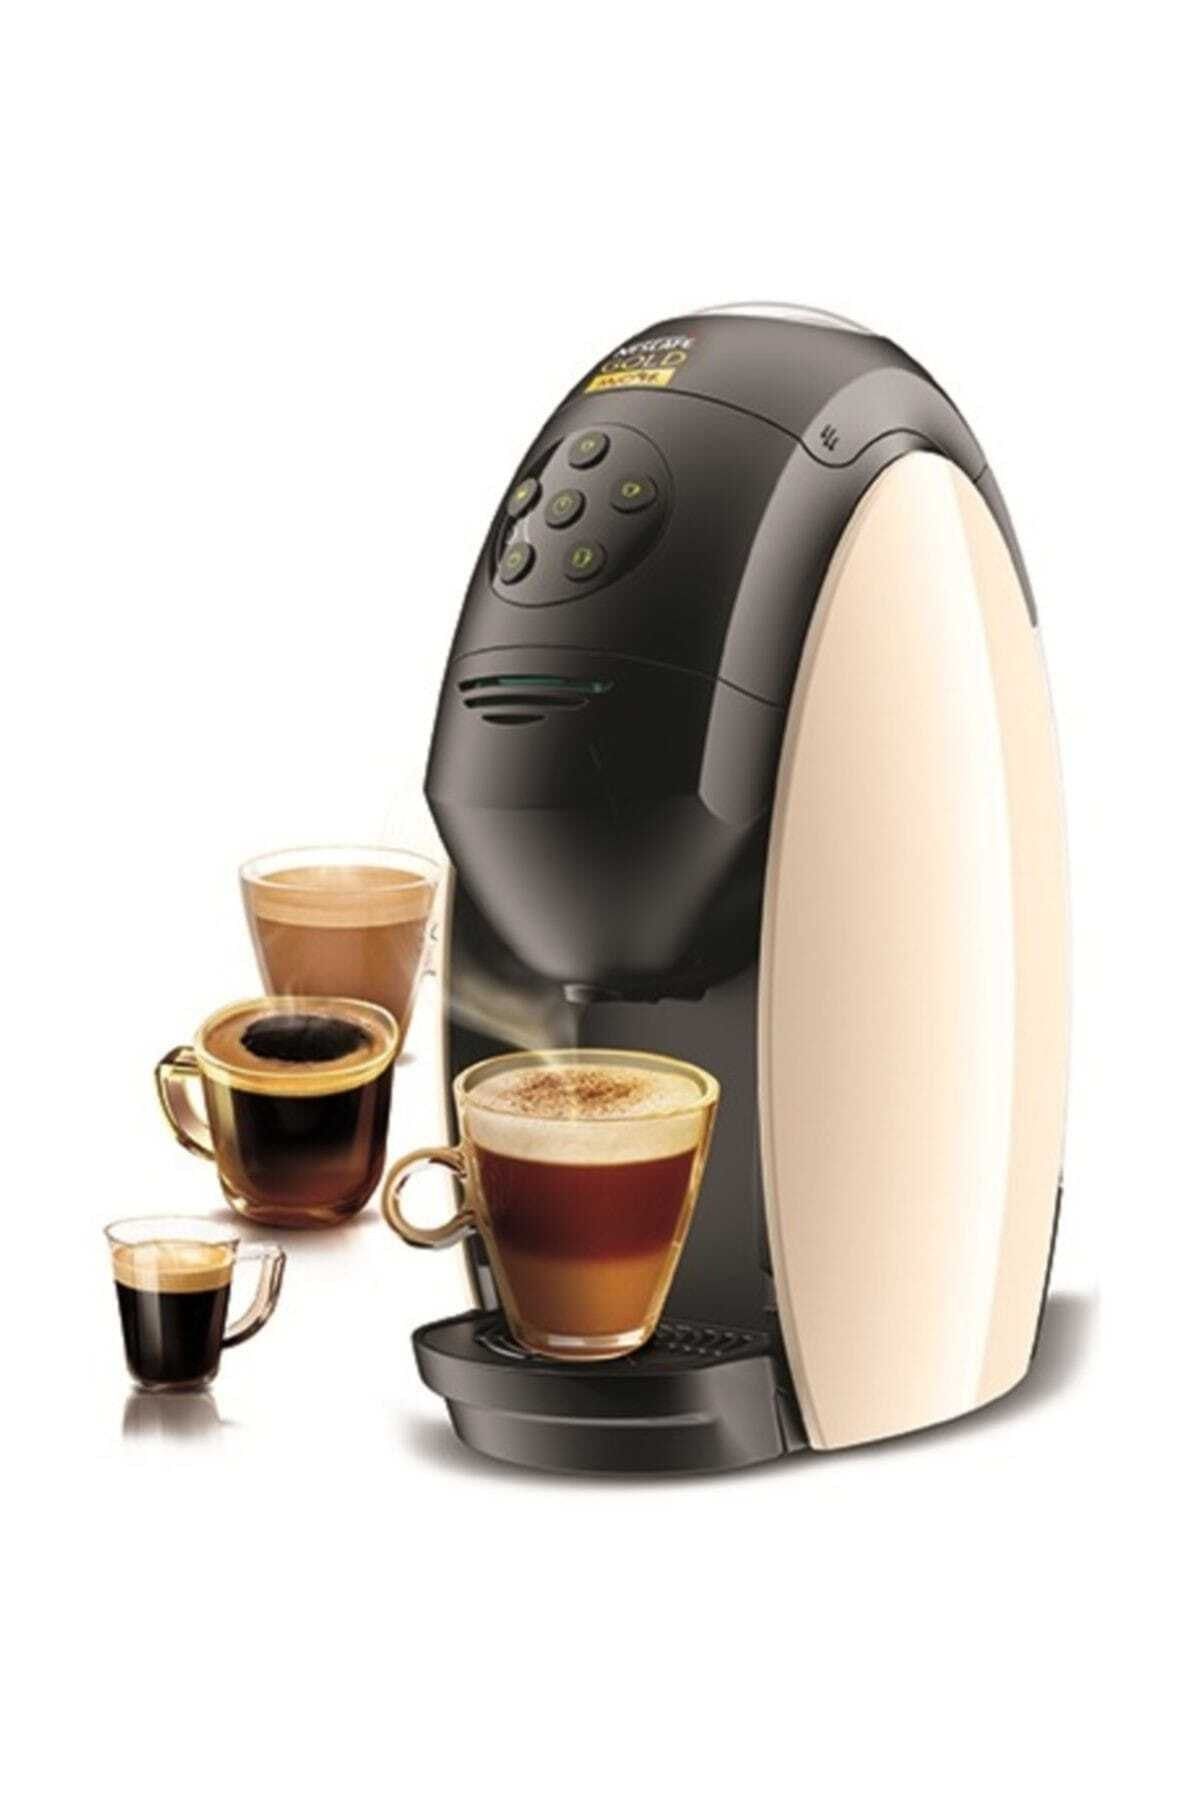 Nescafe Gold Mycafe Kahve Makinesi Krem Bej